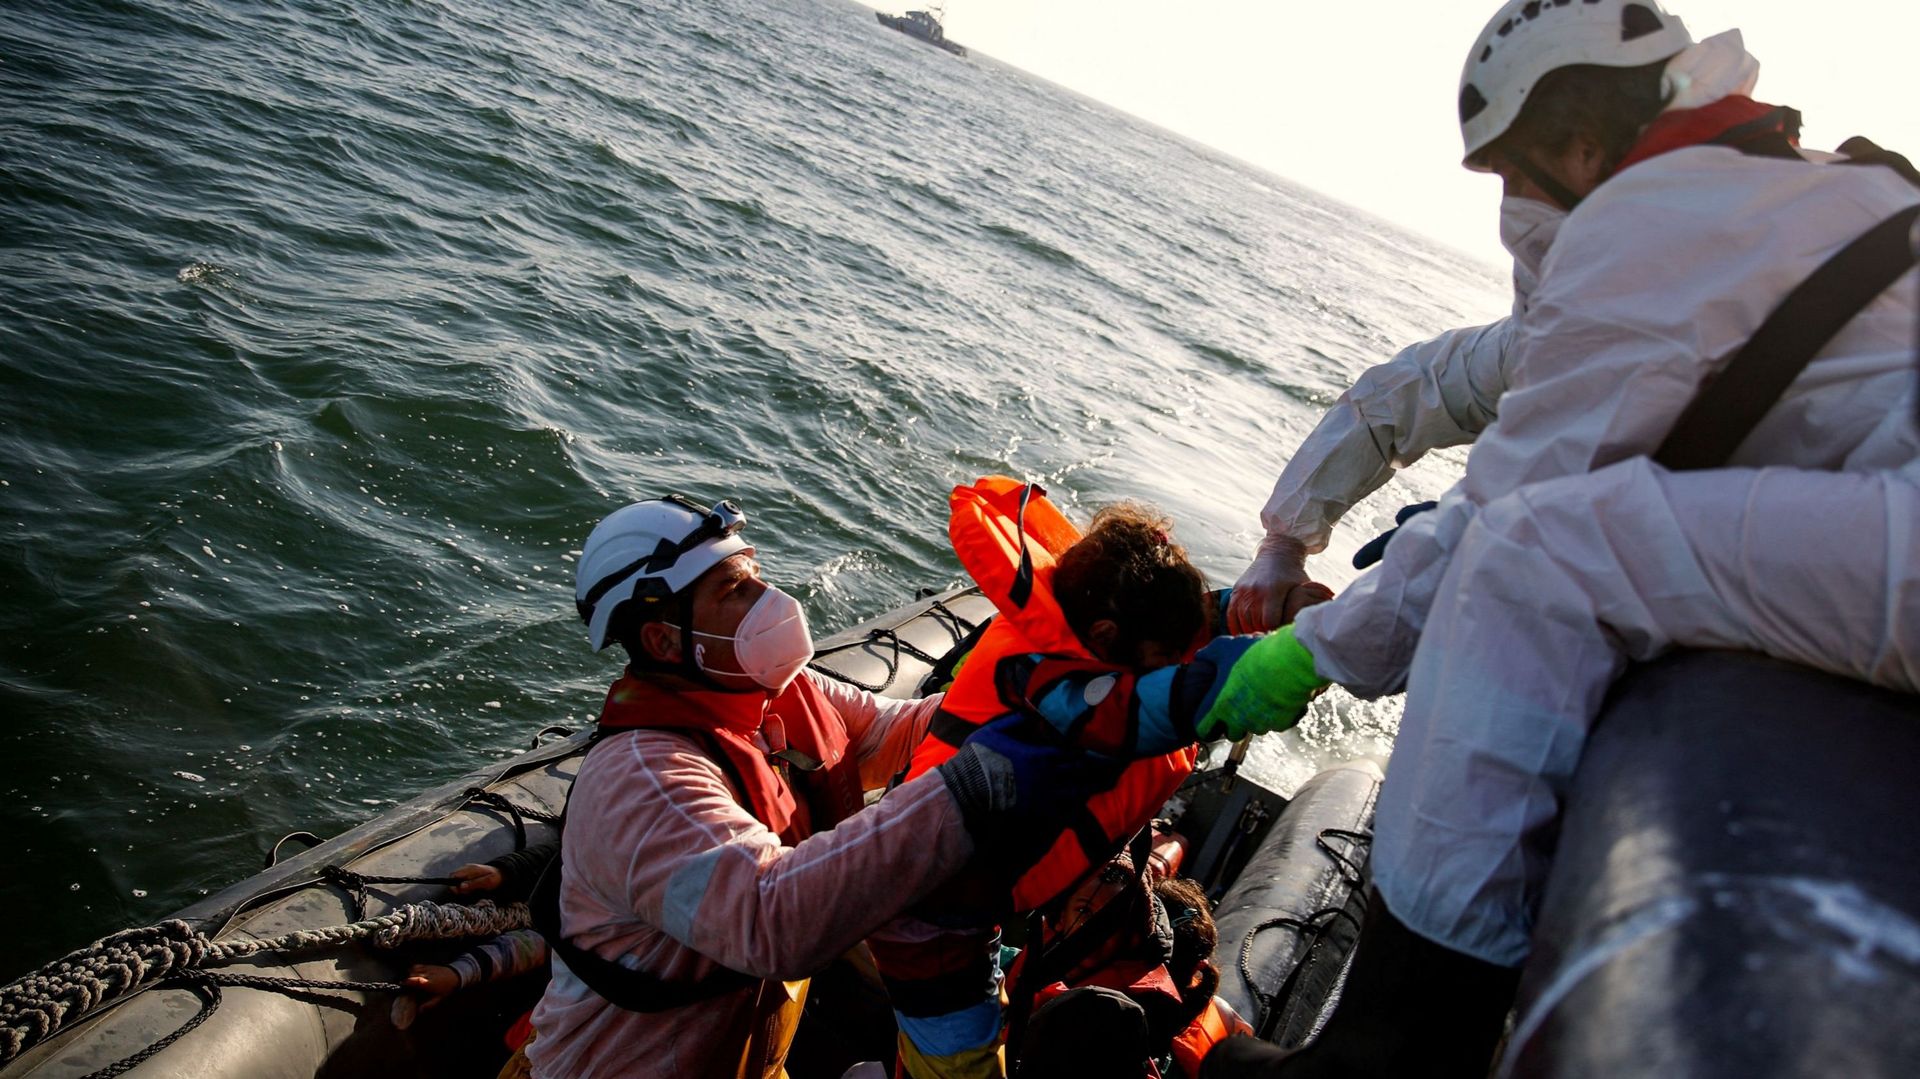 Les membres de l’équipage de l’Abeille Languedoc secourent des migrants alors que le générateur de leur bateau s’est arrêté dans les eaux françaises alors qu’ils tentaient de traverser illégalement la Manche vers la Grande-Bretagne, le 9 mai 2022. L’Abeil